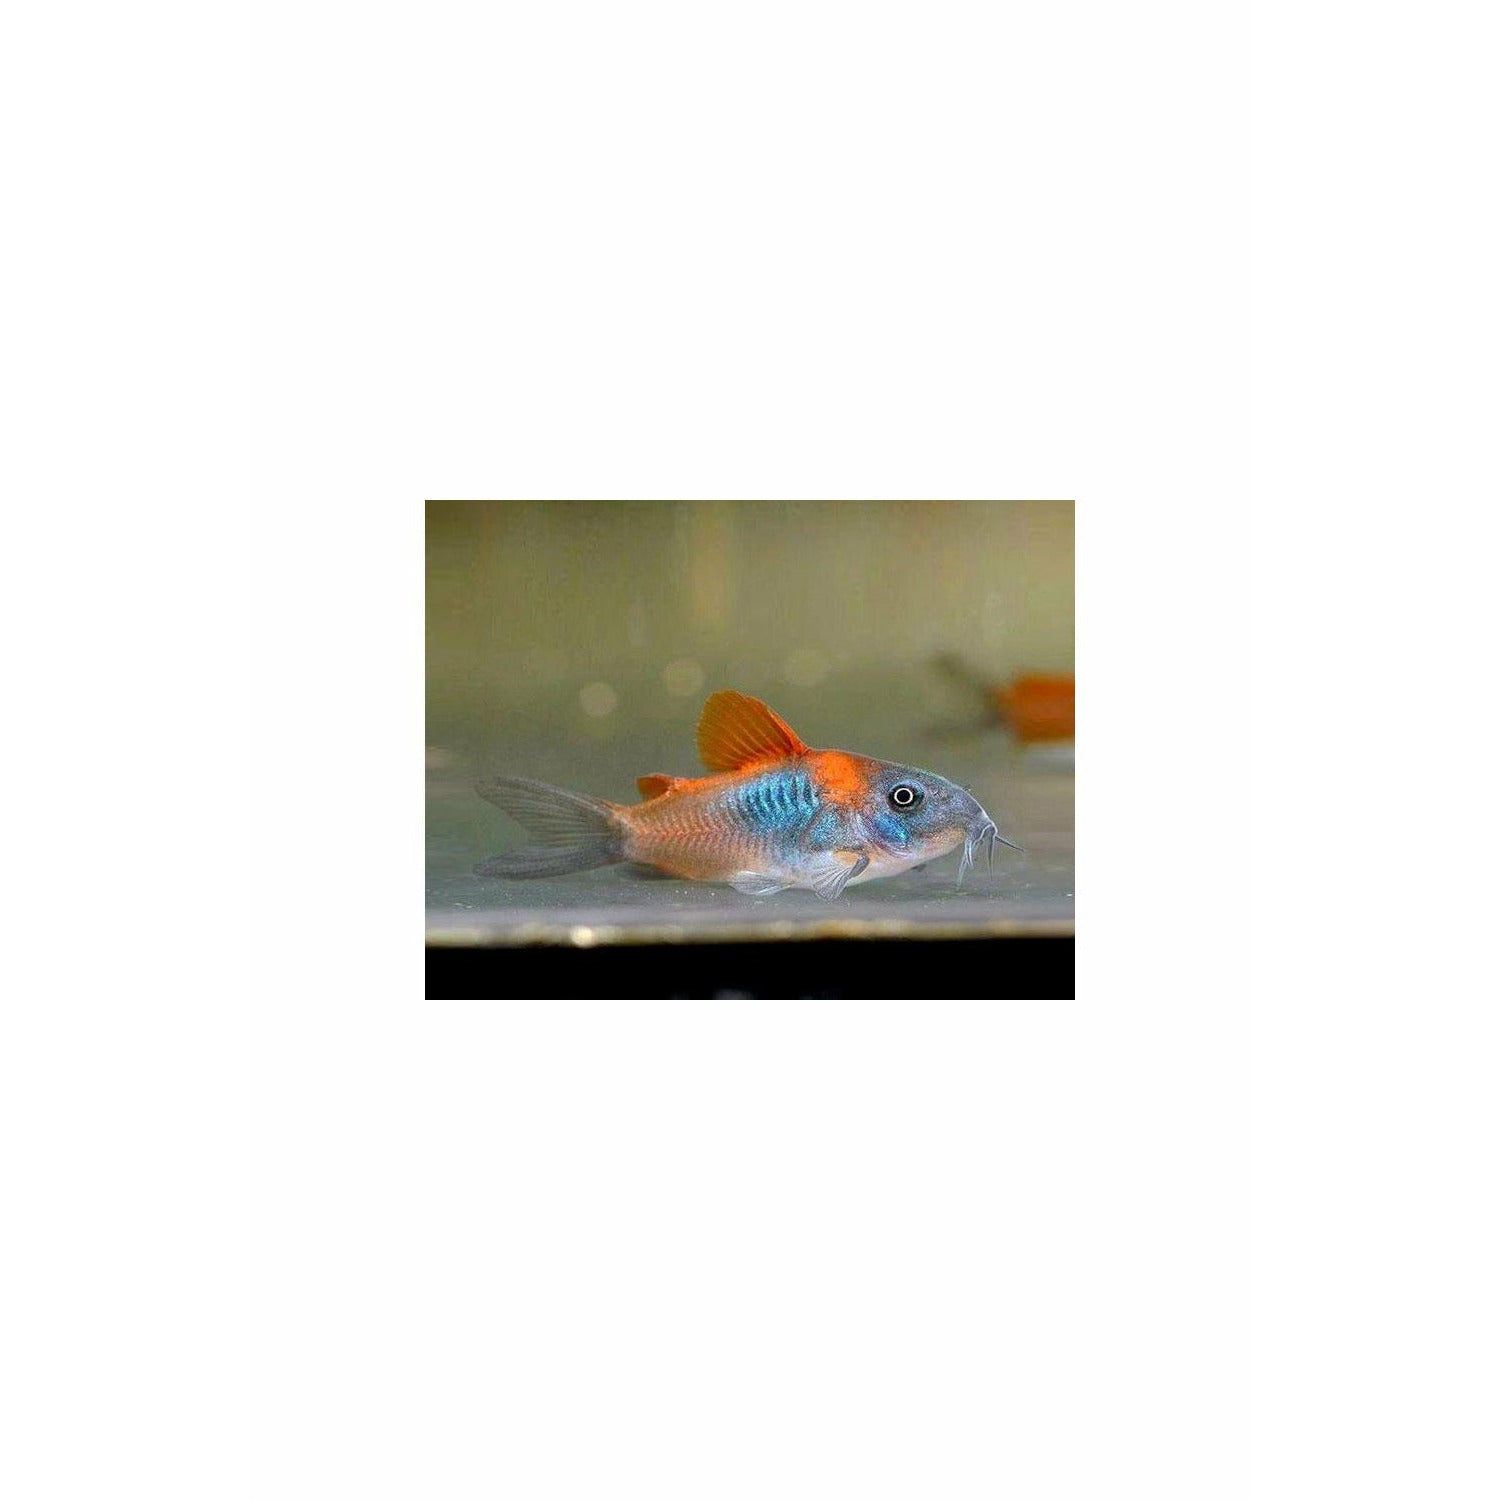 Orange Venezuelan Cory Catfish (CORYDORAS AENEUS "VENEZUELA"),